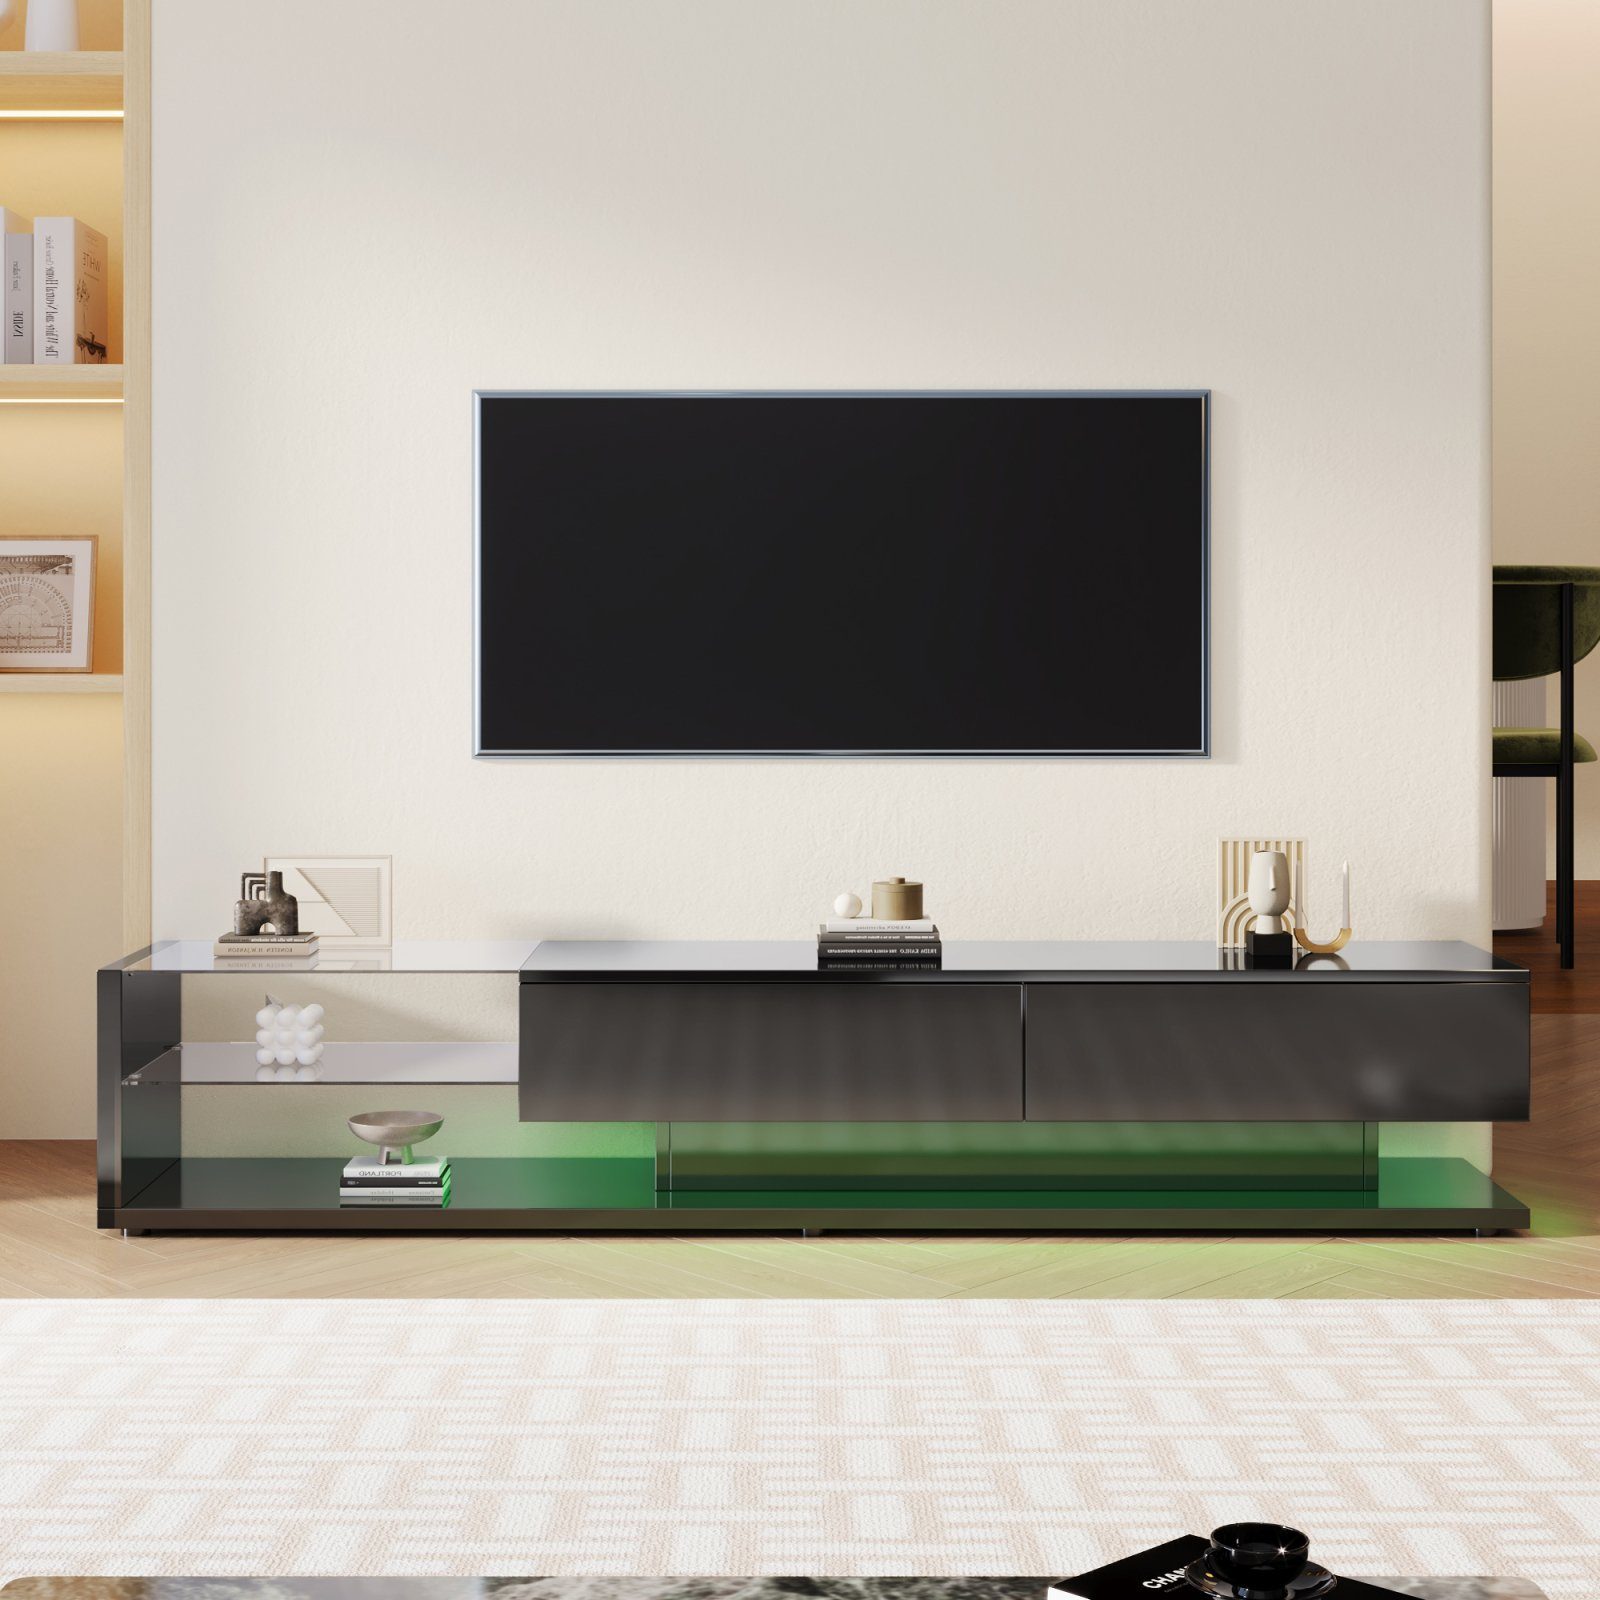 SEEZSSA TV-Schrank LED TV Schrank Modernes Hochglanz TV Board Lowboards Fernsehschrank mit Glasböden Glastrennwände und LED-Beleuchtung, 170 x 38 x 36 cm Schwarz